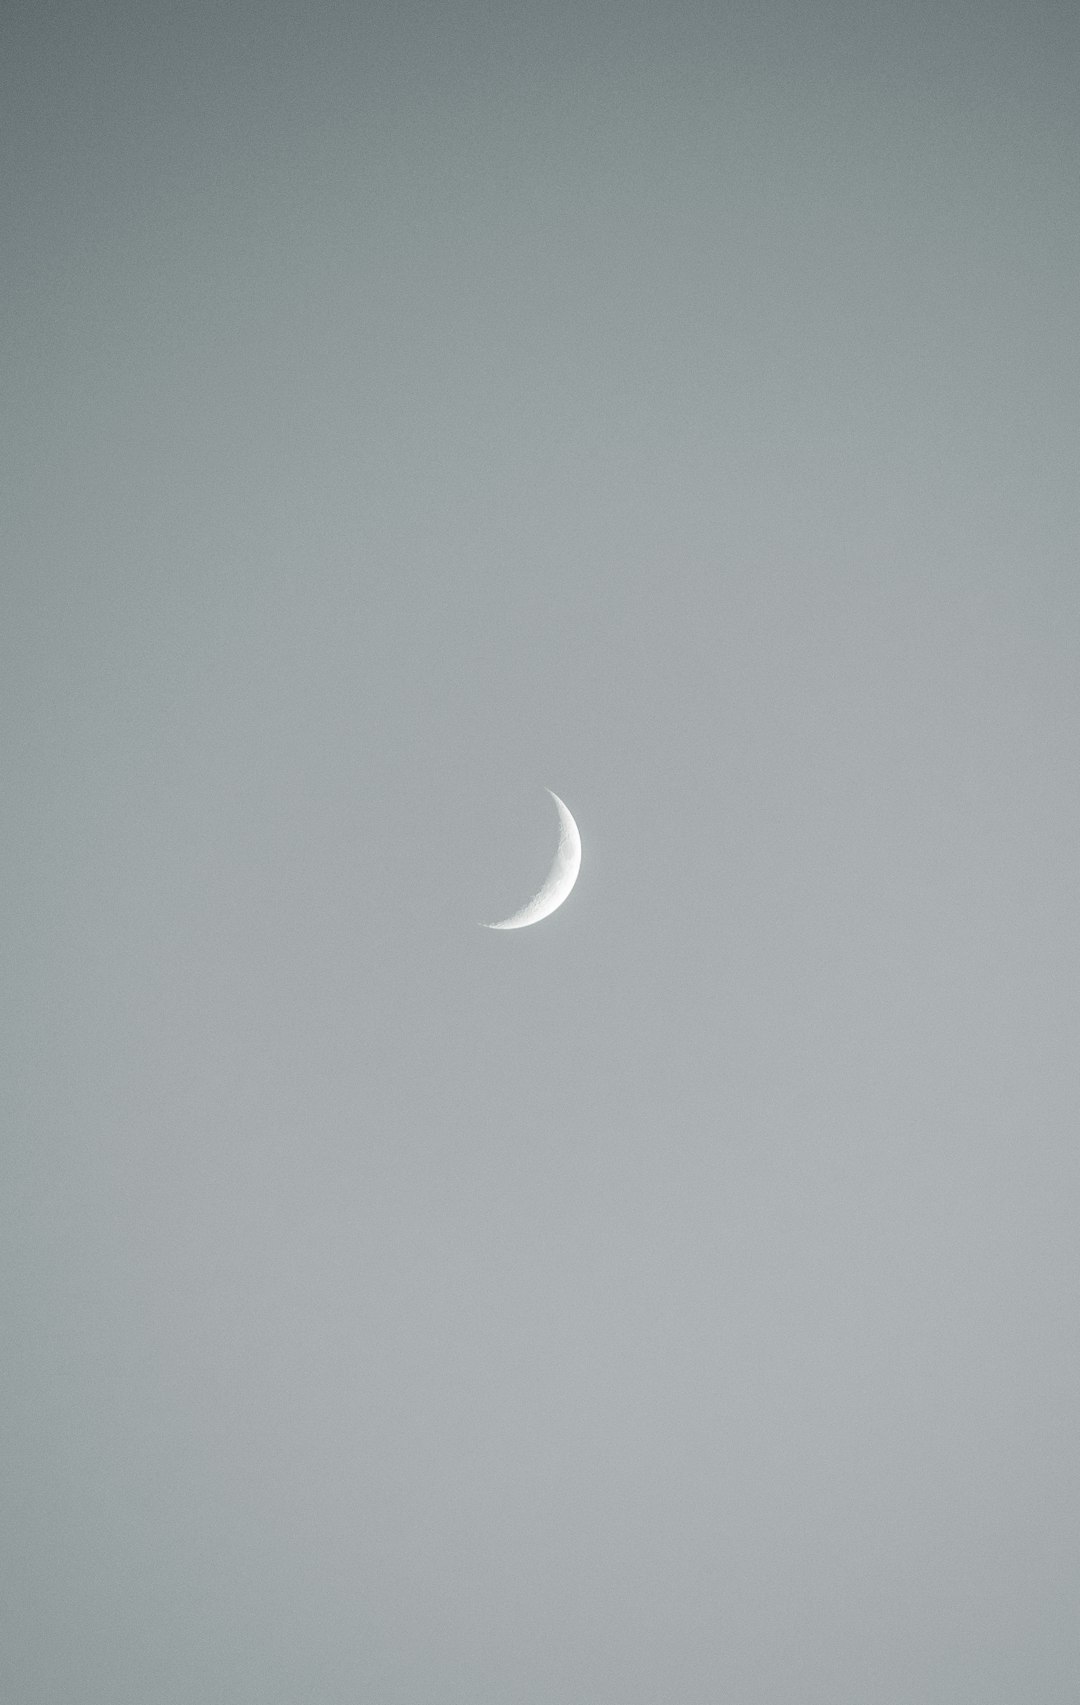 moon in grey sky